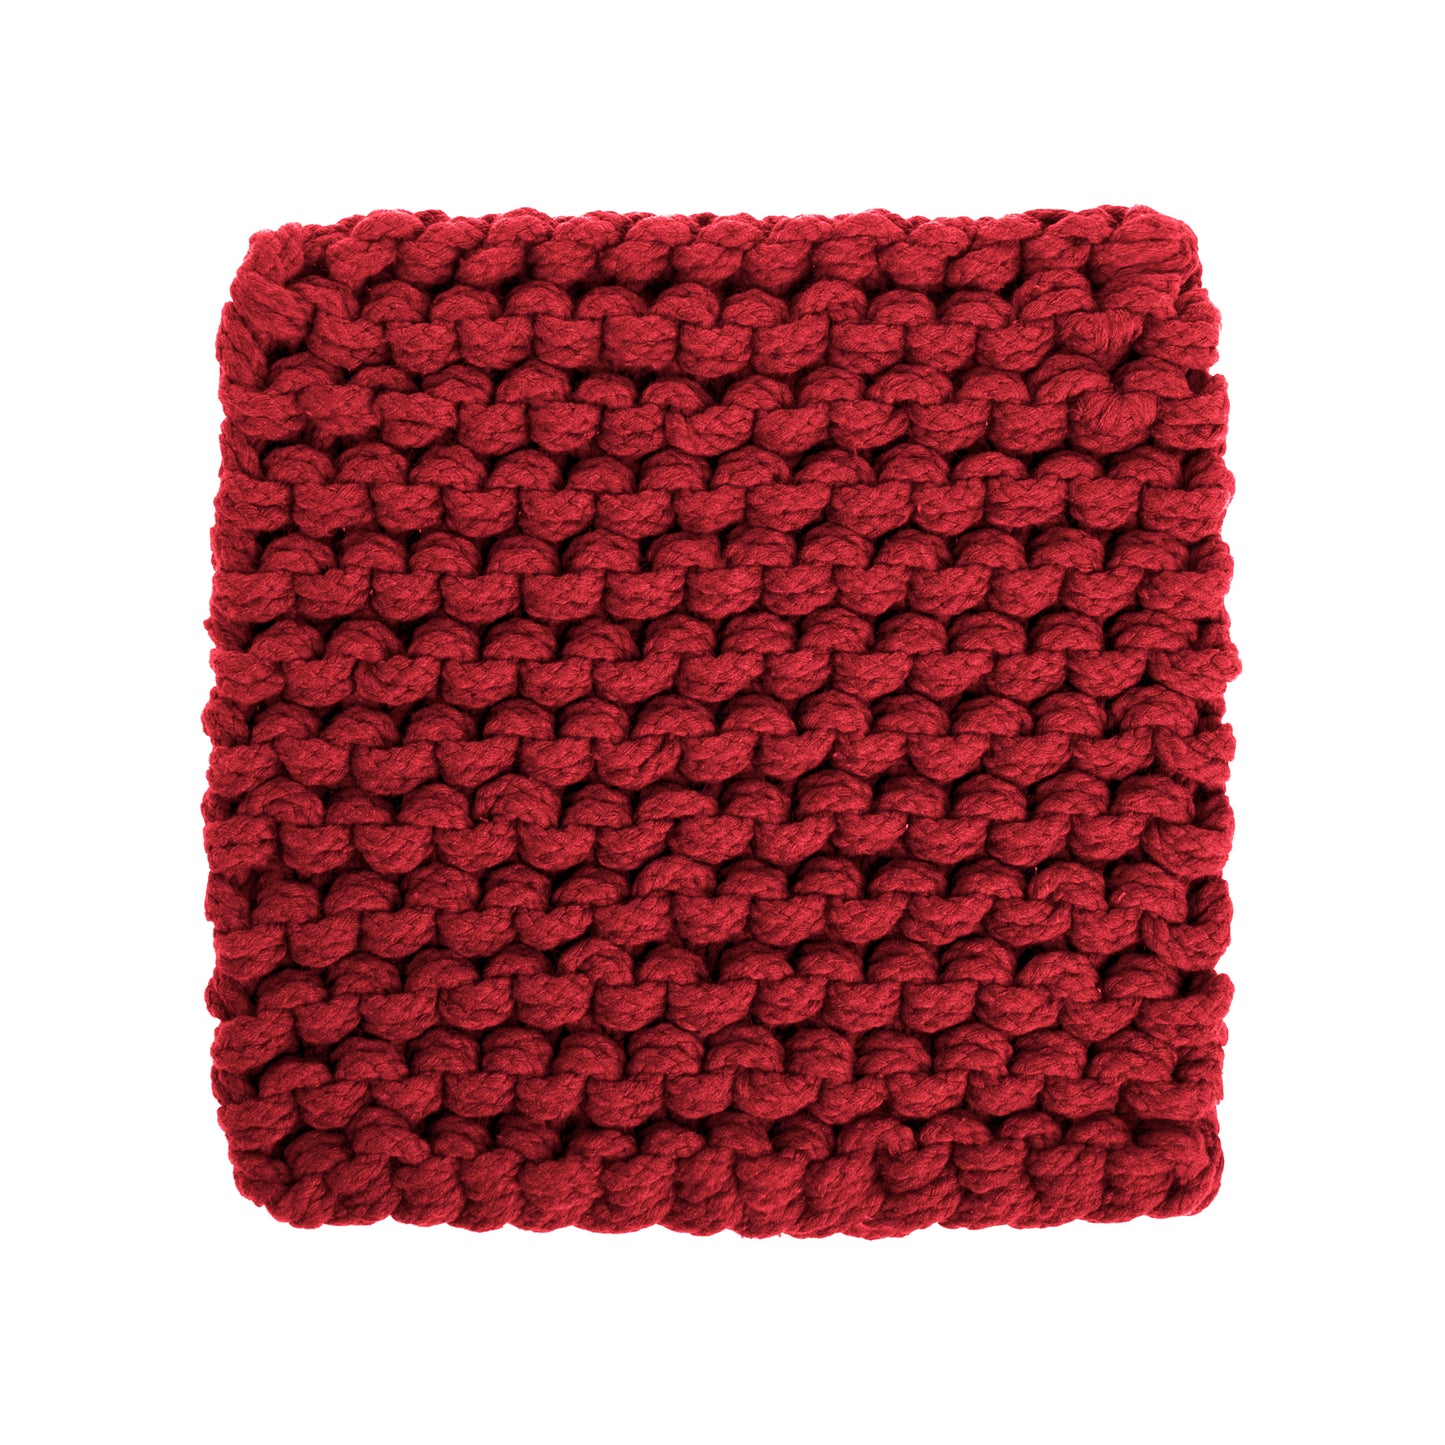 amostra de pontos / Tapete em tricô artesanal Vermelho, com fio 100% algodão. Dimensões: Largura - 150cm; Comprimento - 200cm. 